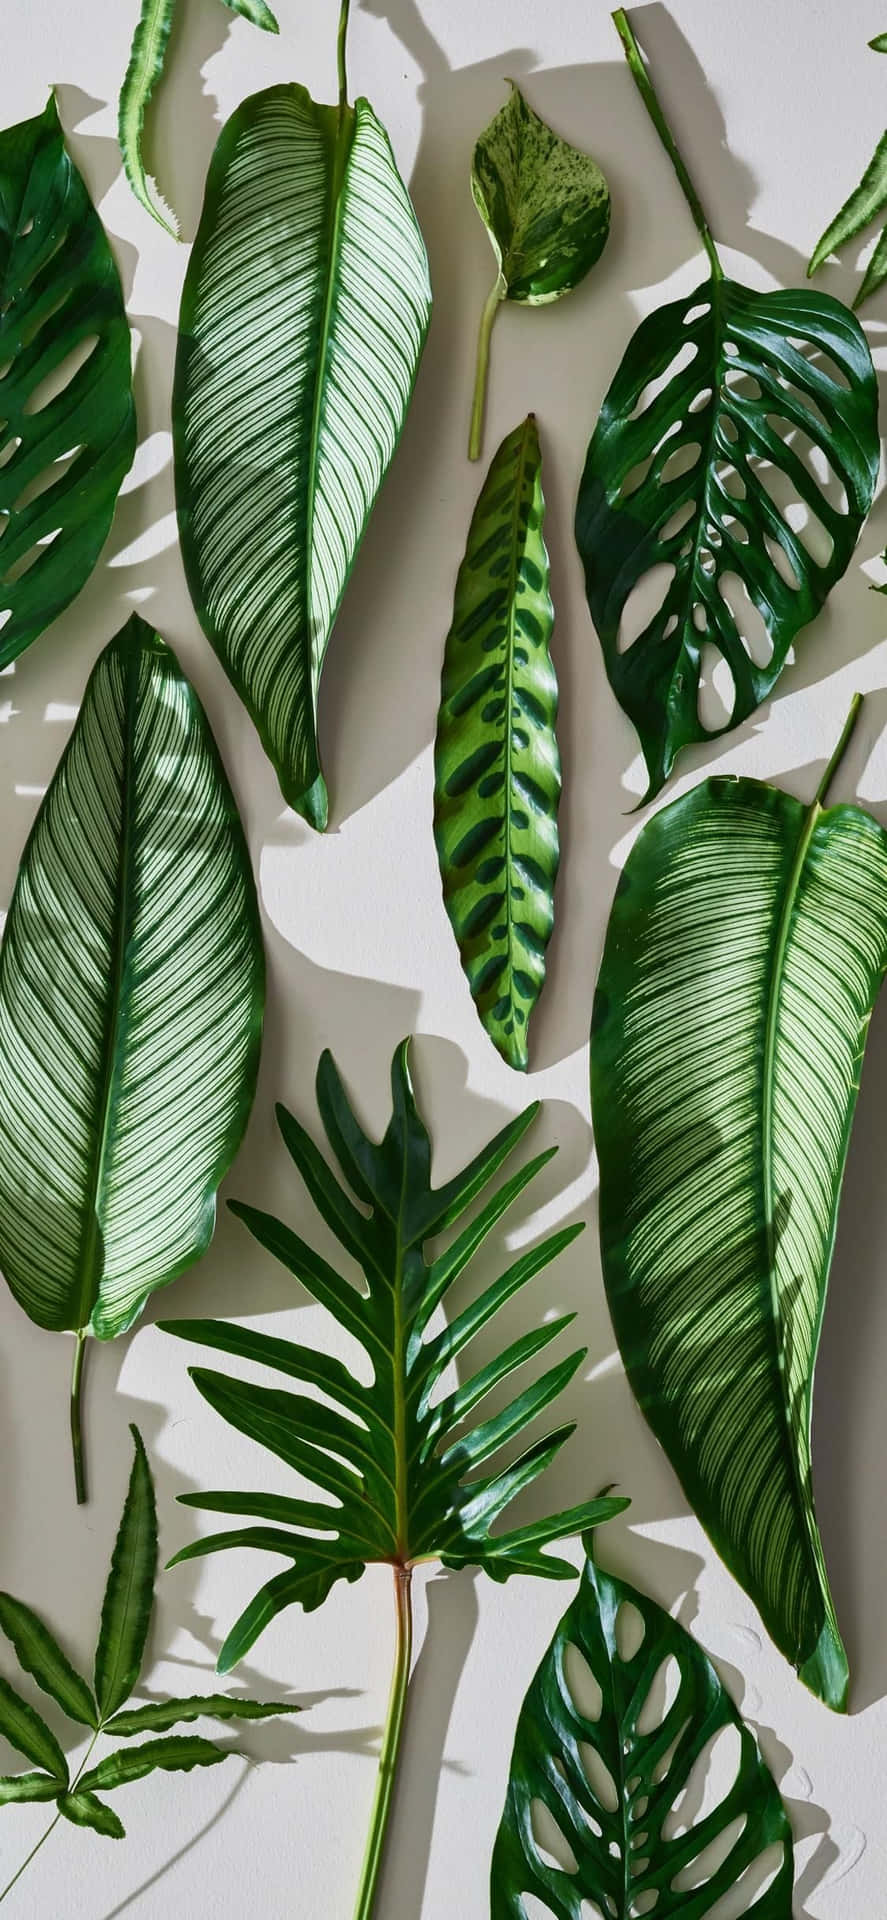 Nyd et strejf af natur med dette Plant Aesthetic Phone Wallpaper. Wallpaper